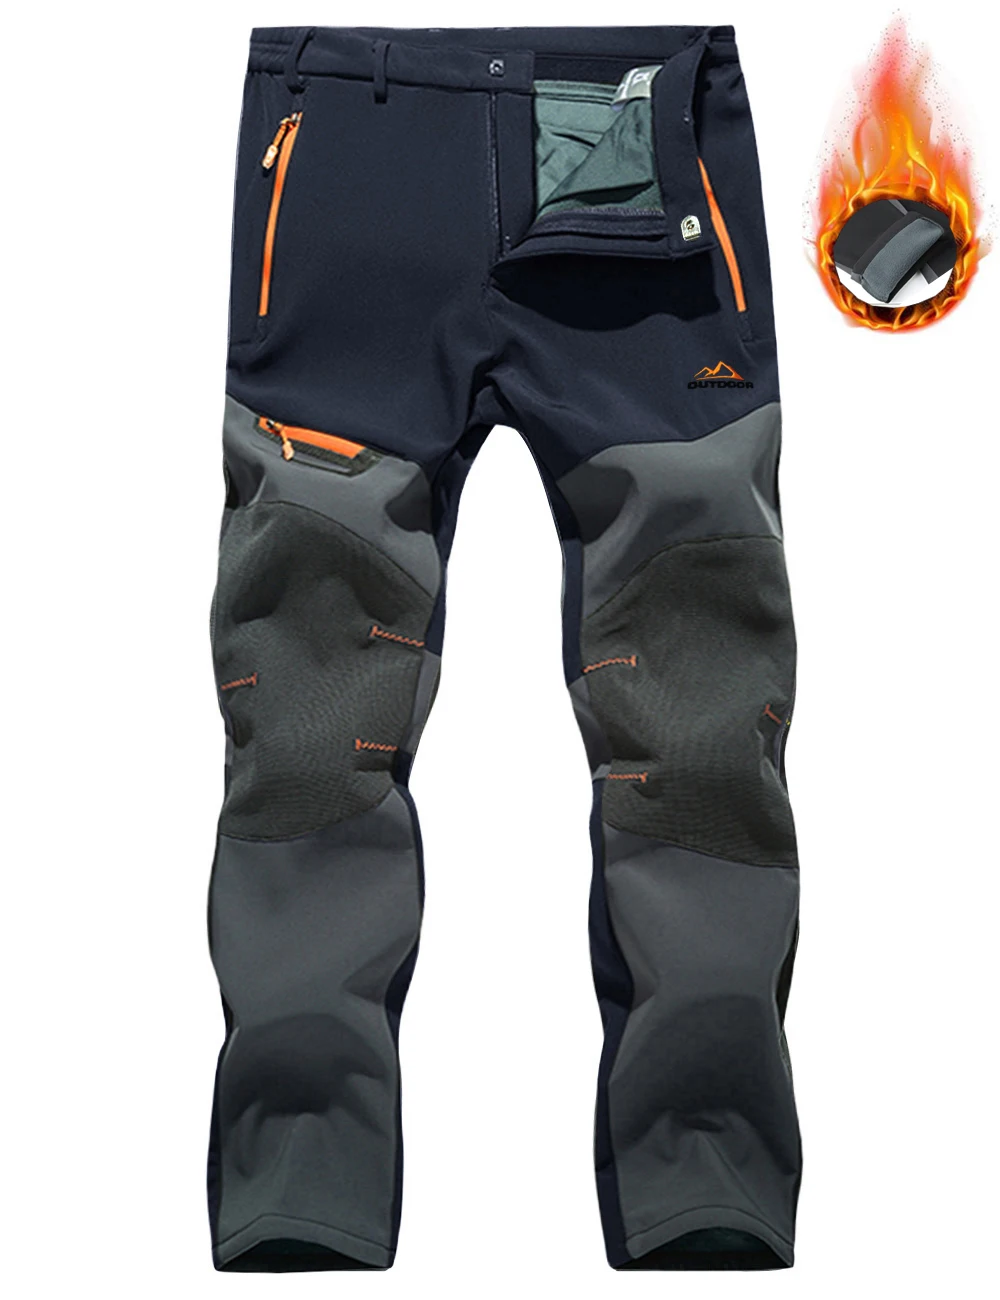 black khaki pants TACVASEN 4 Season Breathable Mens Tactical Pants Fishing Hiking Camping Waterproof No Fleece Pants Zipper Pocket Casual Trousers casual cargo pants Casual Pants